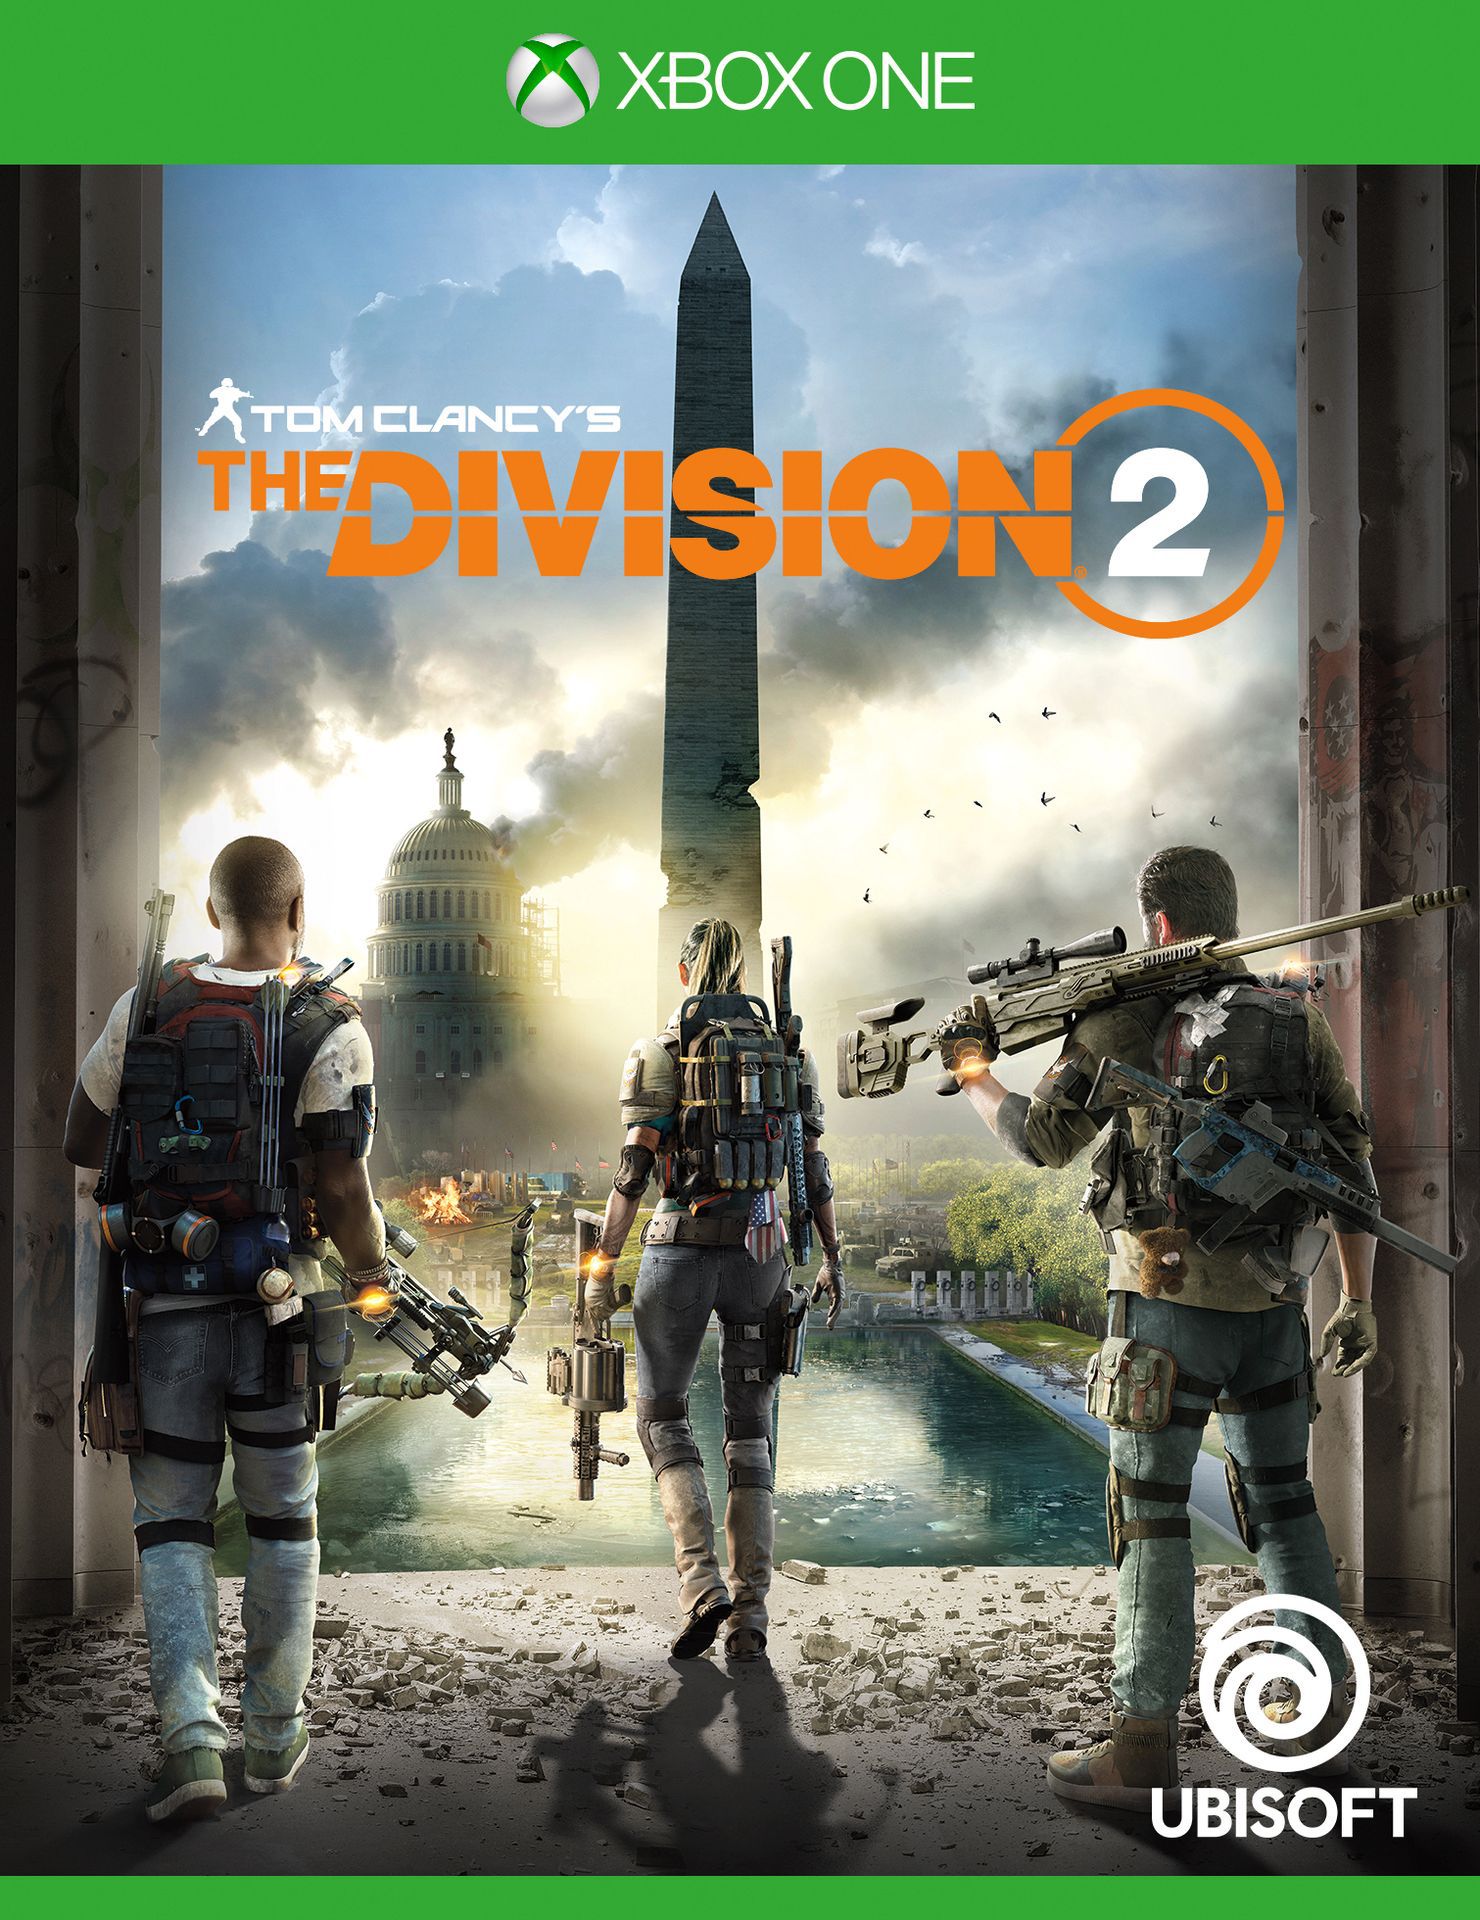 jaquette reduite de The Division 2 sur Xbox One